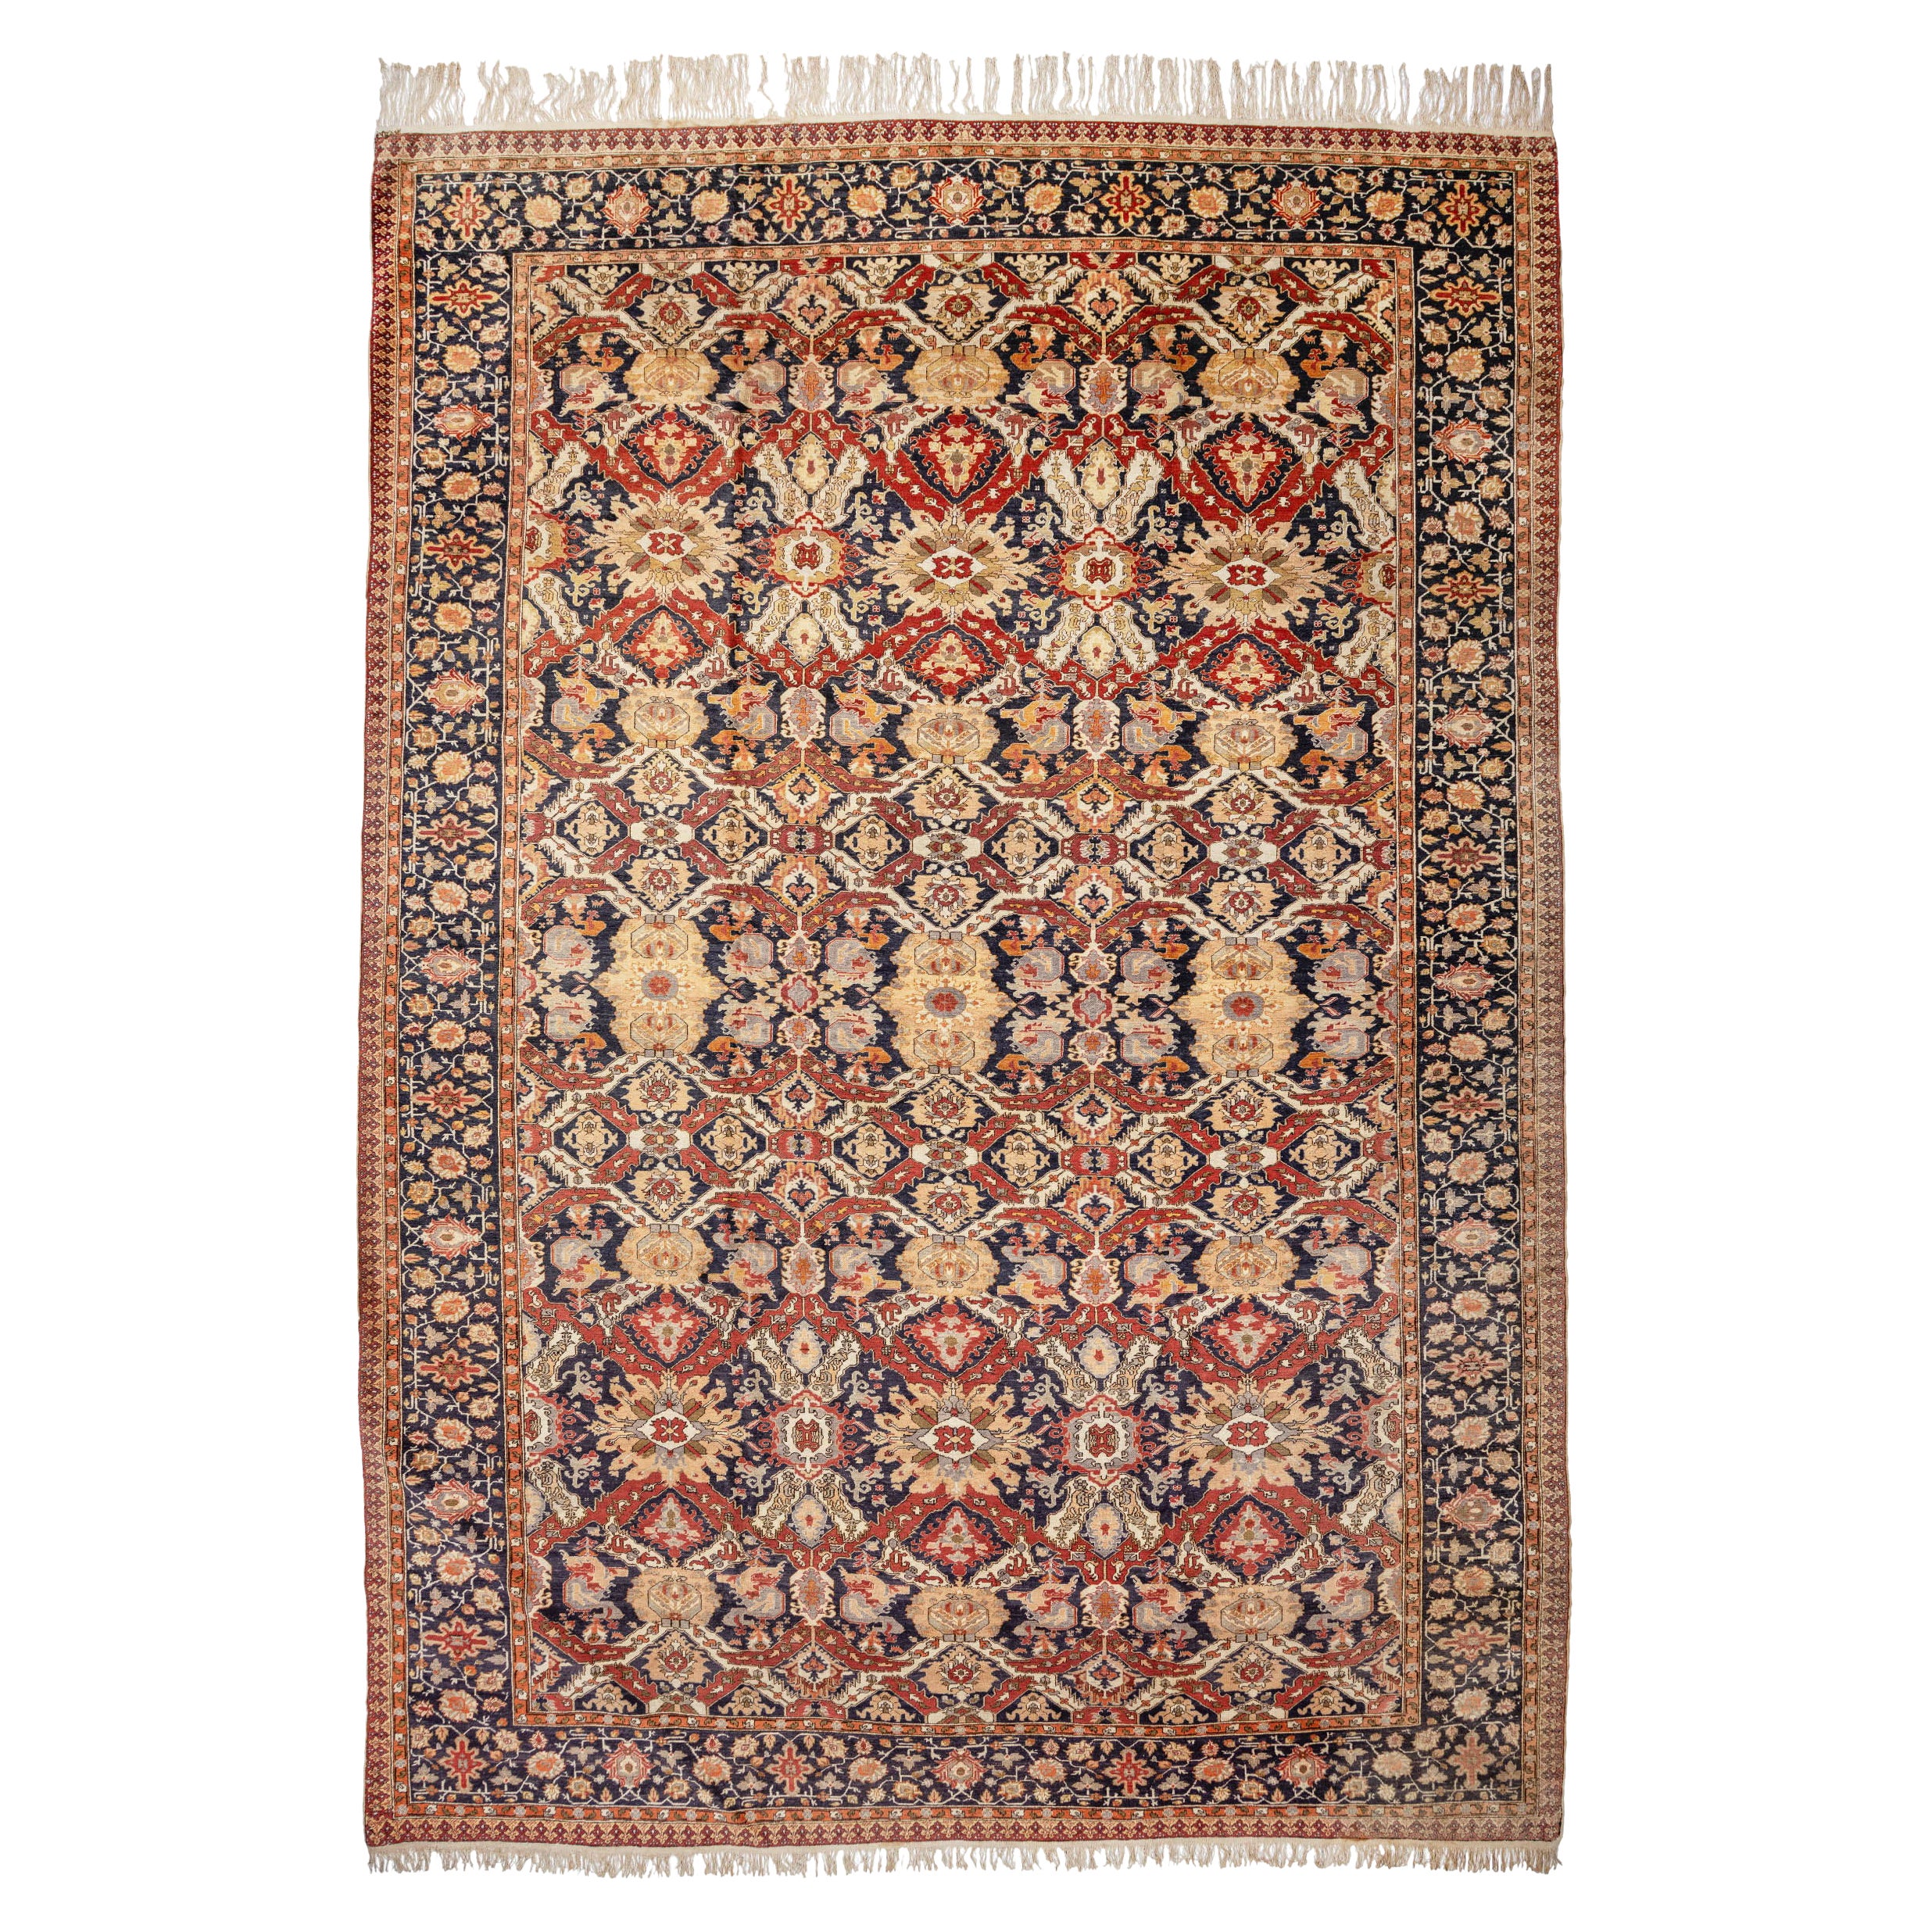 Antique Large Turkish Kayseri Carpet, c. 1900